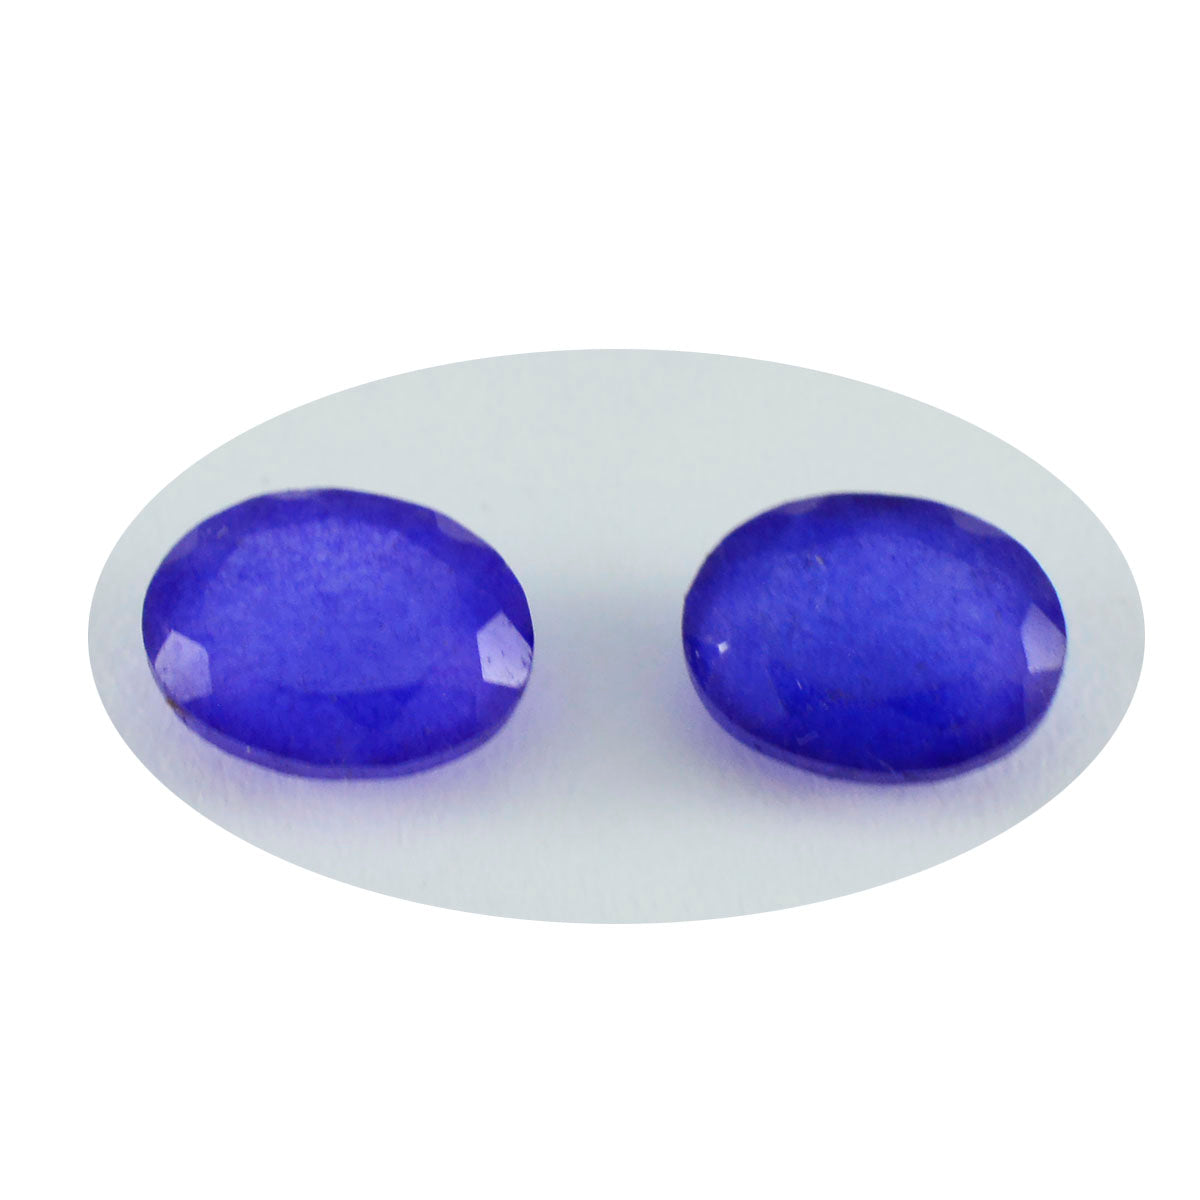 Riyogems 1 Stück natürlicher blauer Jaspis, facettiert, 6 x 8 mm, ovale Form, wunderschöner Qualitäts-Edelstein